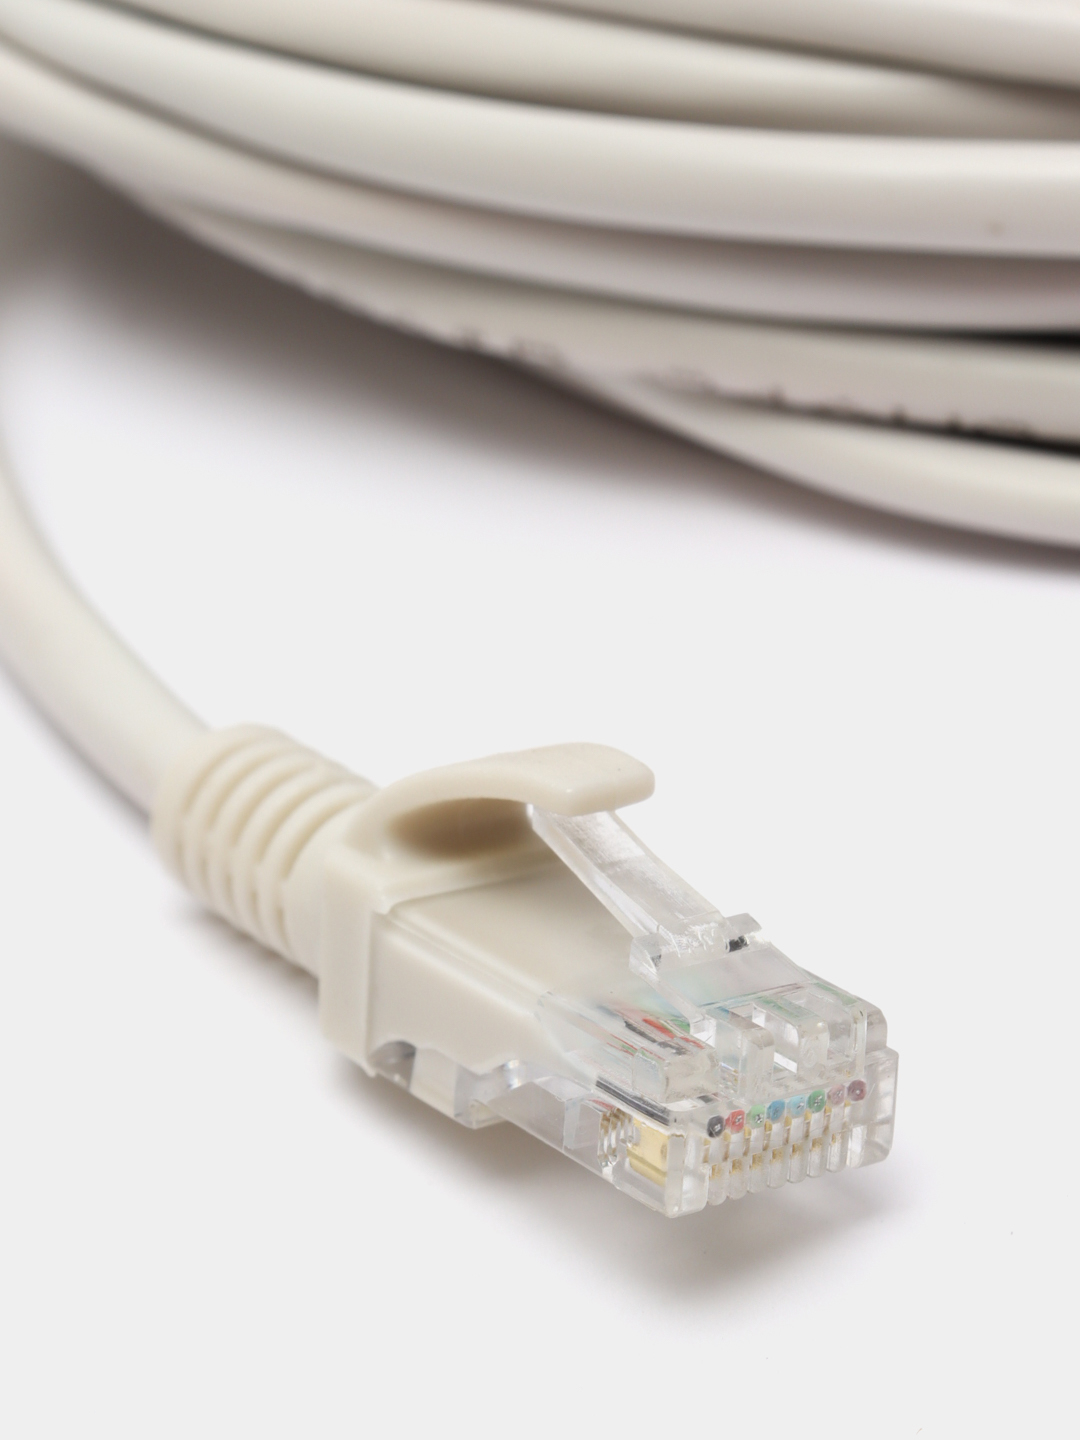  кабель LAN, UTP для интернета, патч-корд RJ45 категория 5 13.5 .